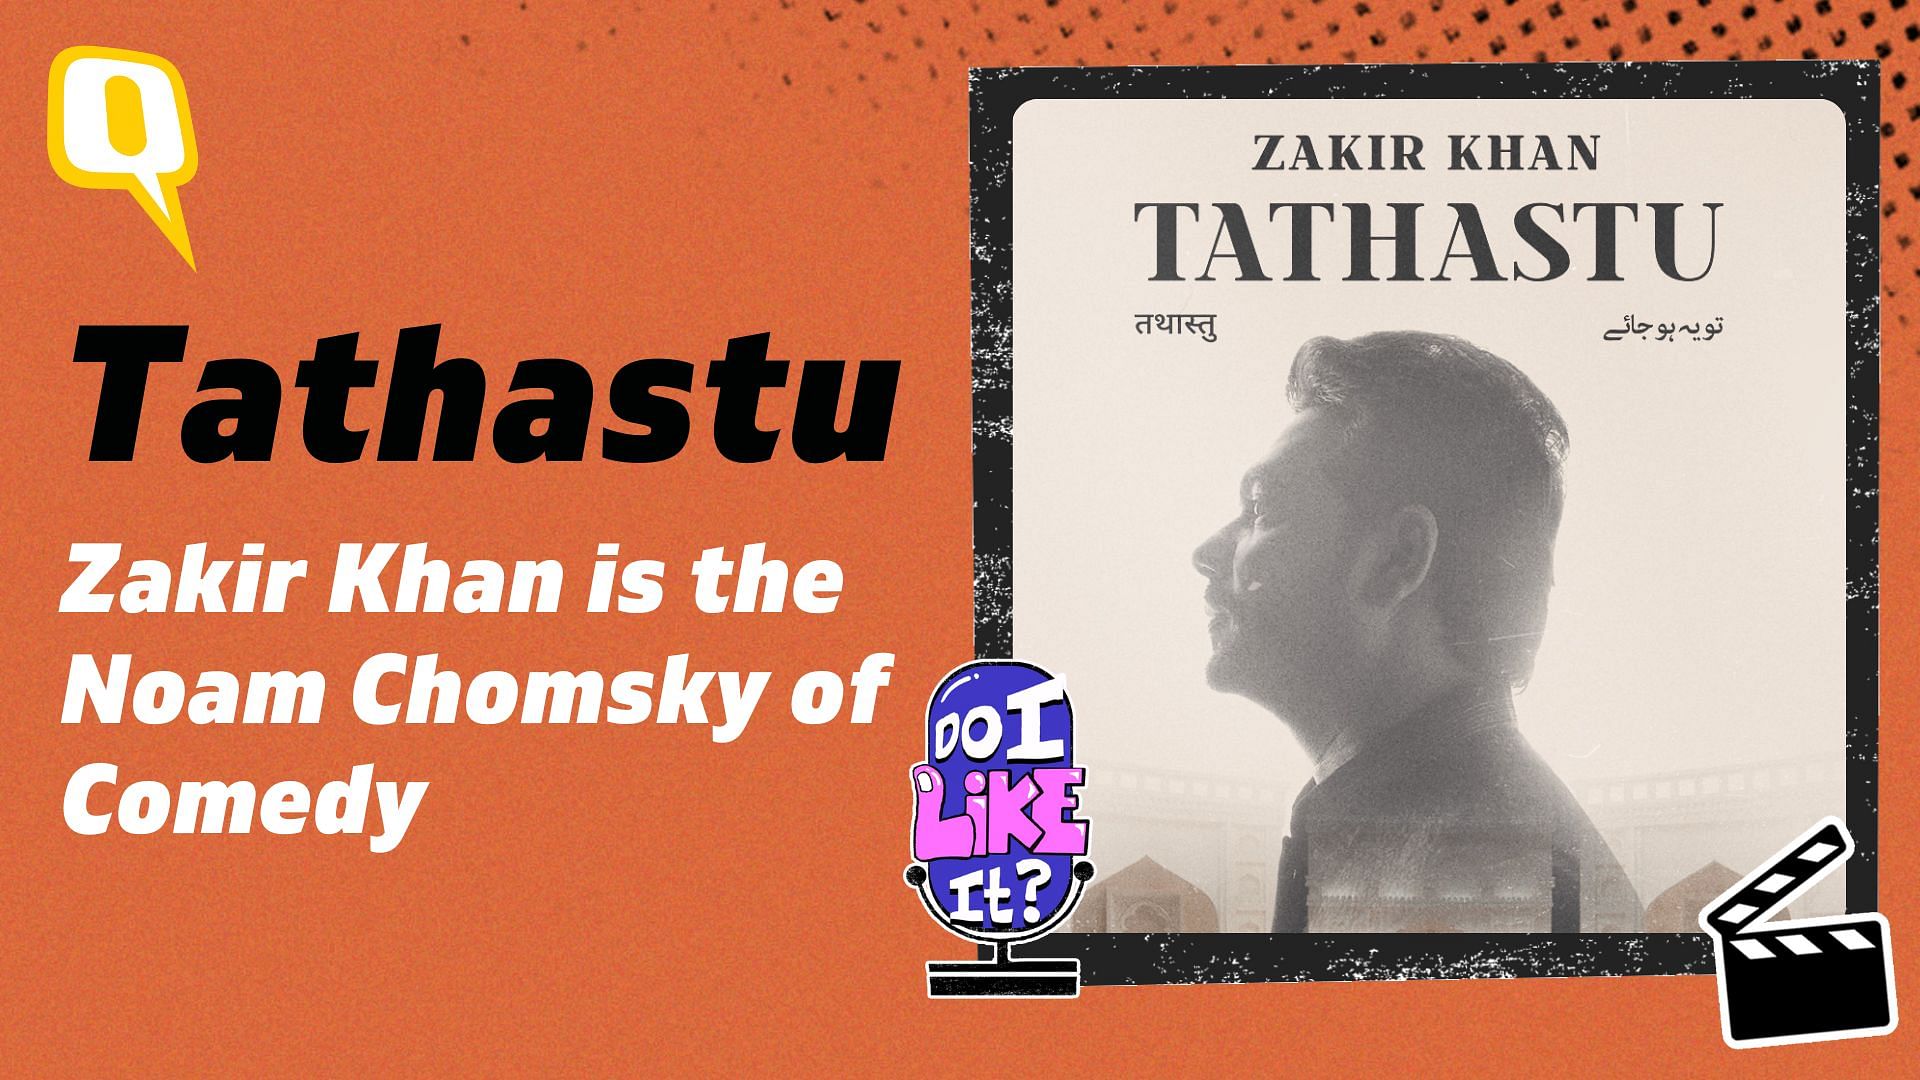 <div class="paragraphs"><p>Prateek Lidhoo reviews Zakir Khan's Tathastu</p></div>